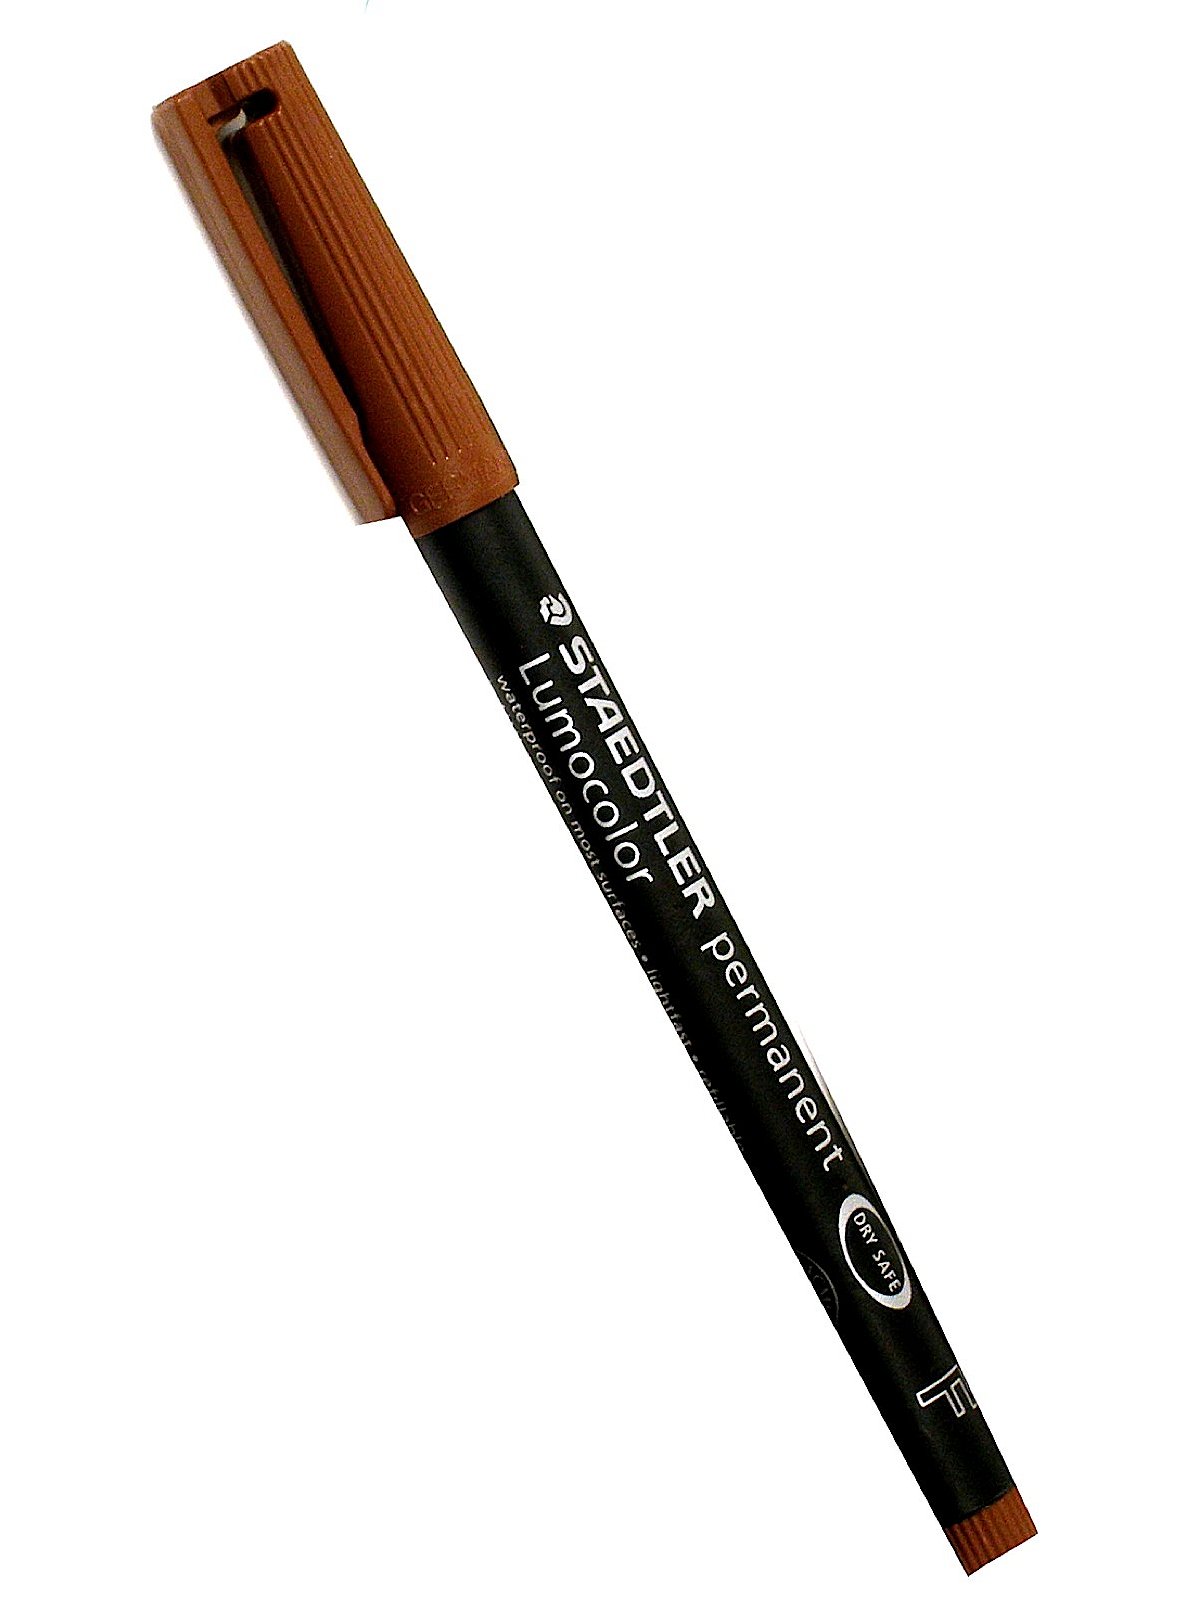 STAEDTLER Lumocolor Permanent Marker Pens FINE tip 8 COLOURS